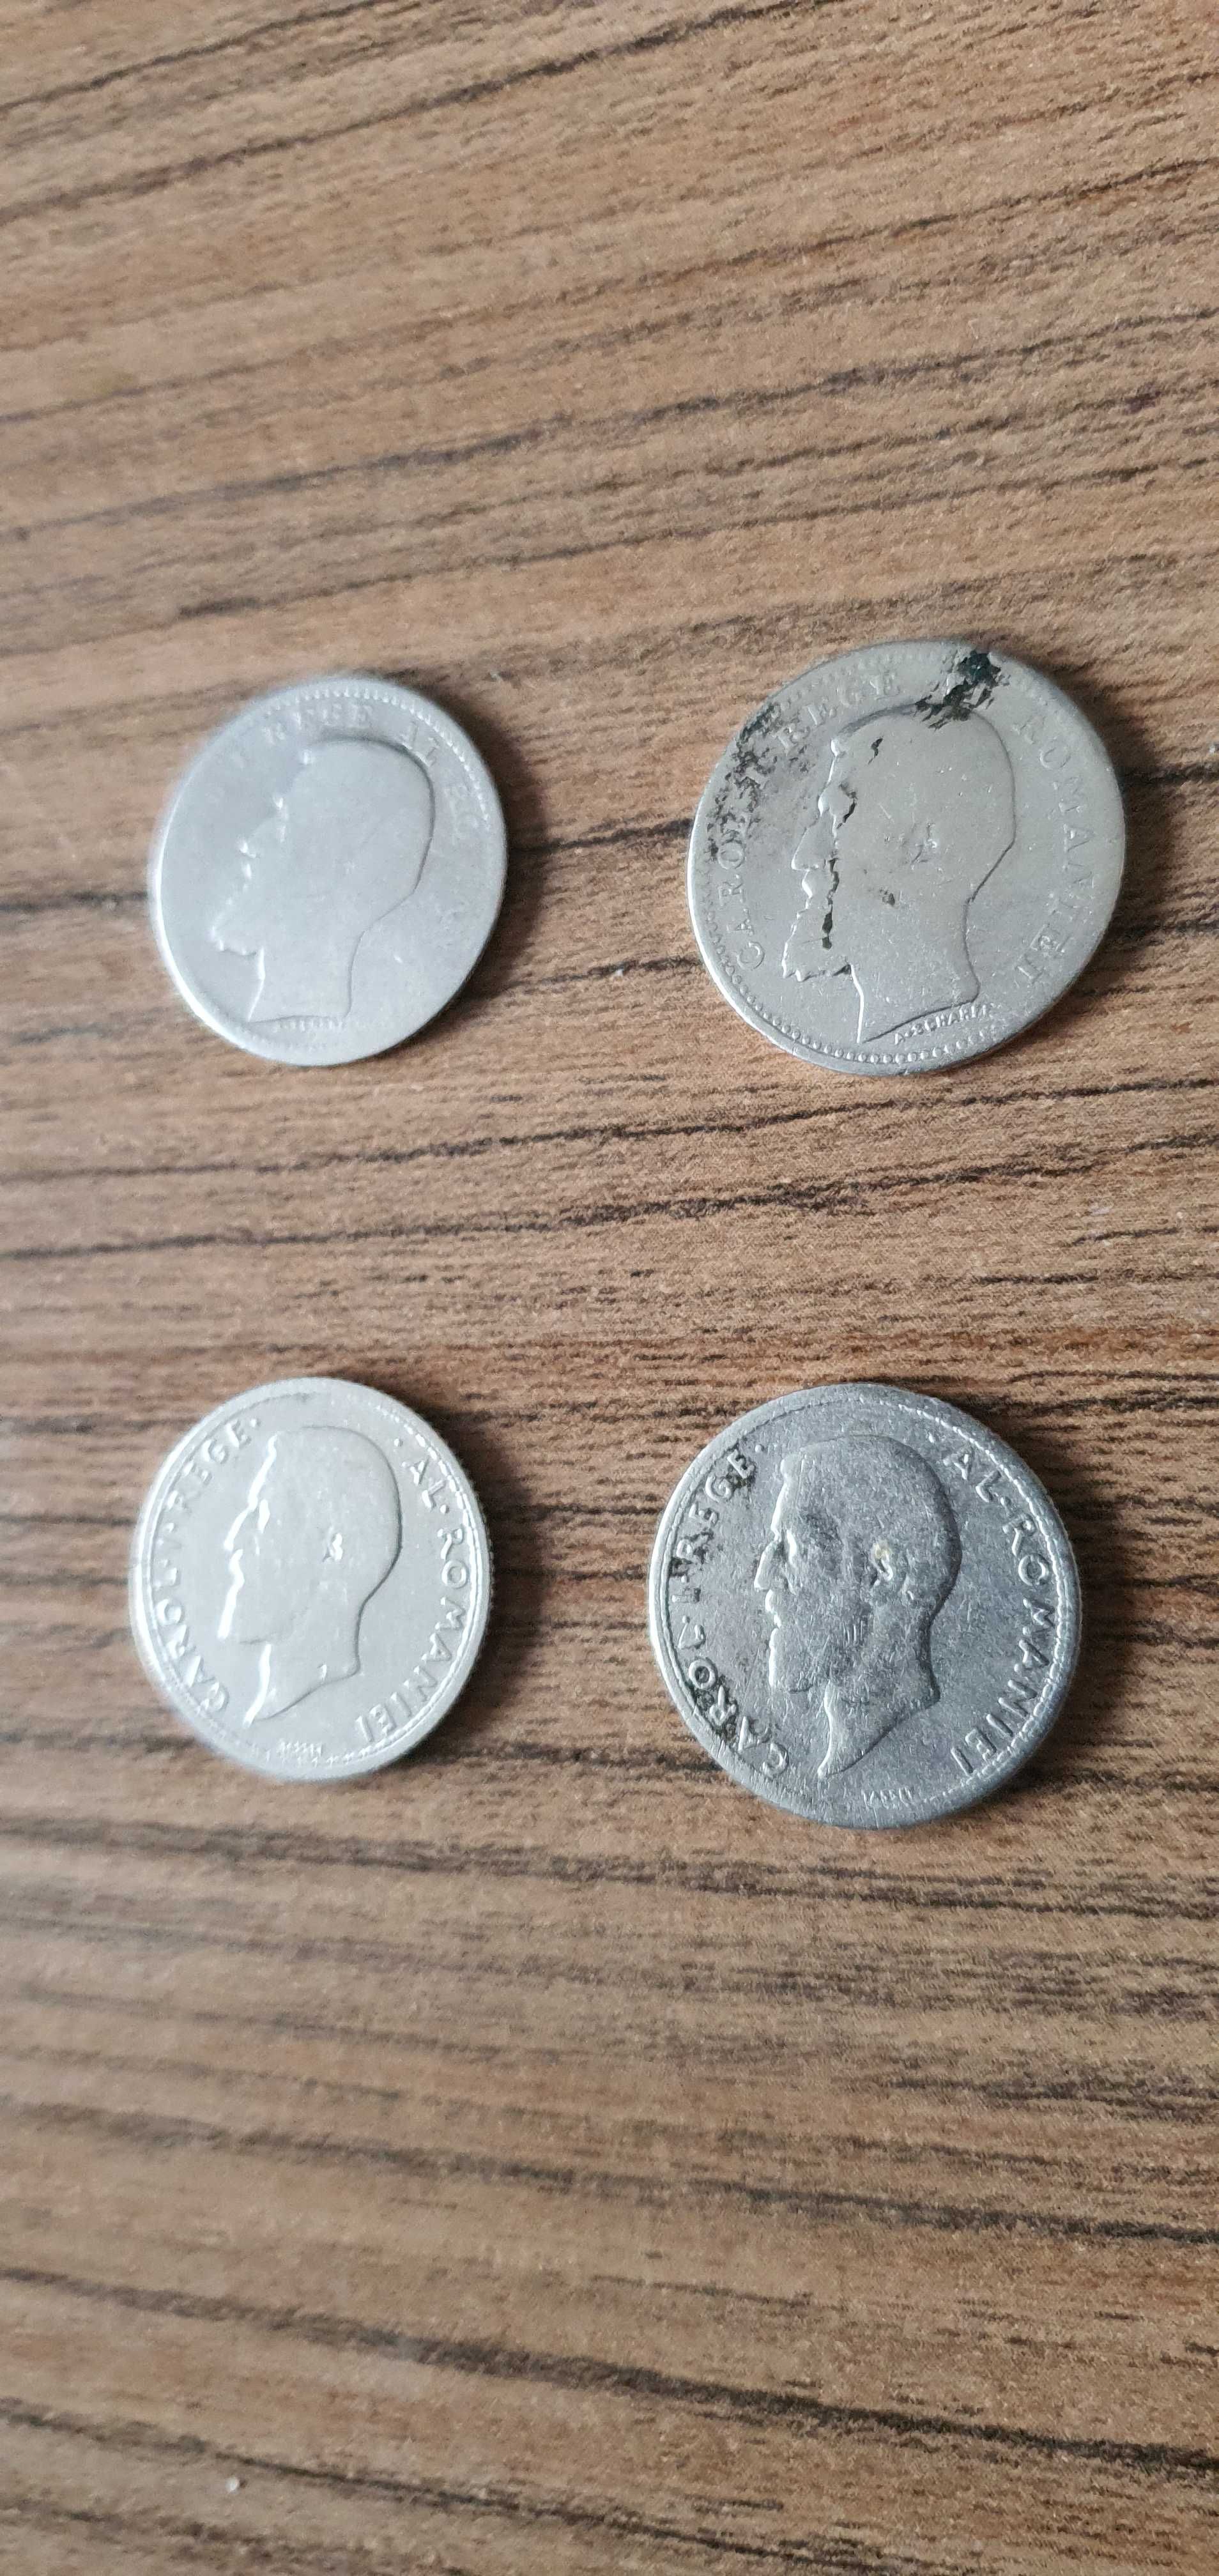 50 Bani Argint 1894, 50 Bani Ag 1900, 50 Bani Ag 1910,50 Bani 1911